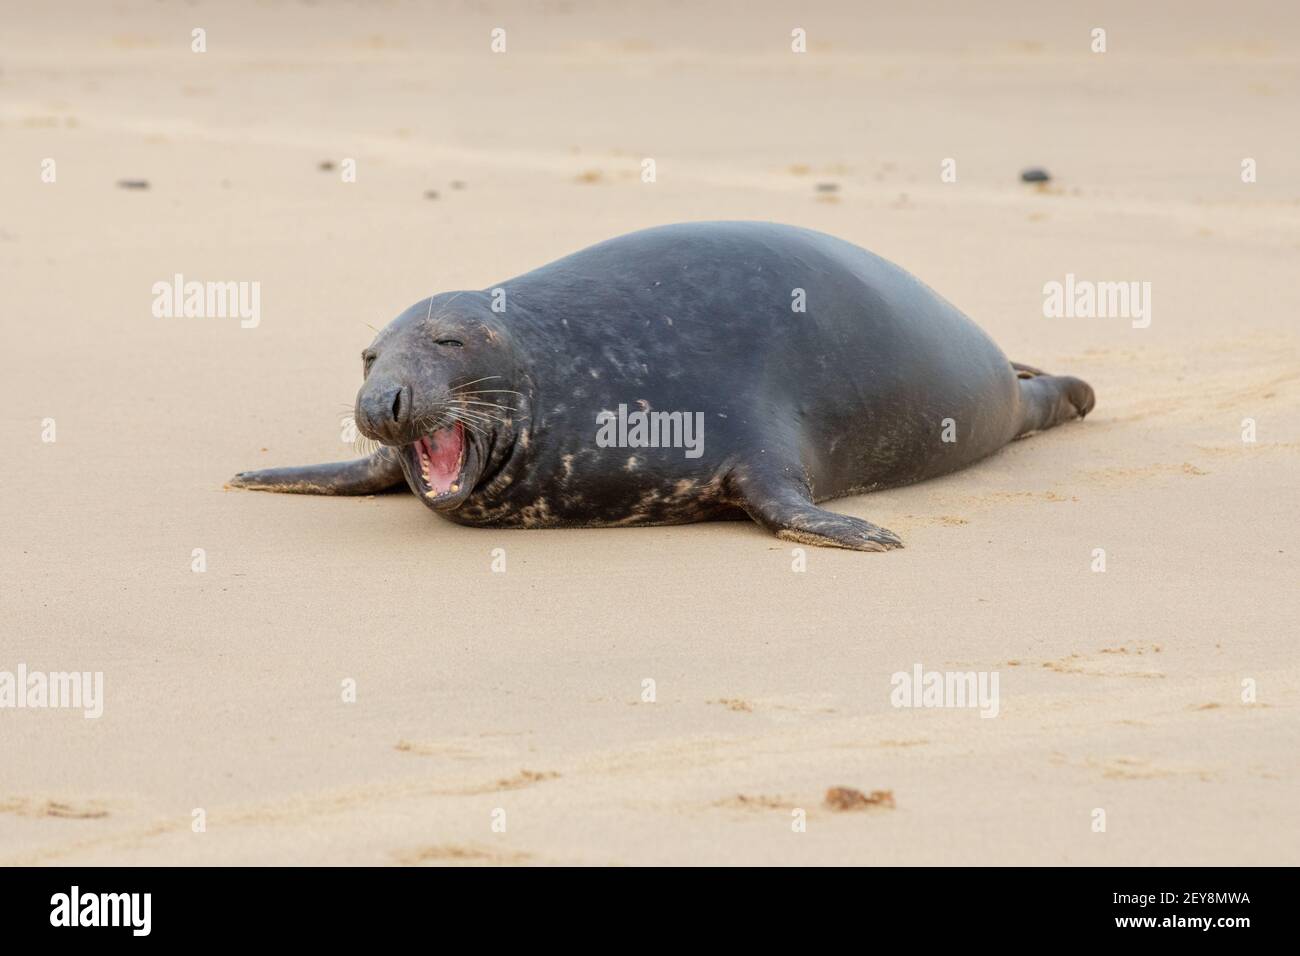 Phoque gris (Halichoerus grypus). Reposant, allongé, tête relevée, sur la surface de sable de la plage. Ayant un grand bâillement, dentition révélatrice, adapté à la capture de poissons Banque D'Images